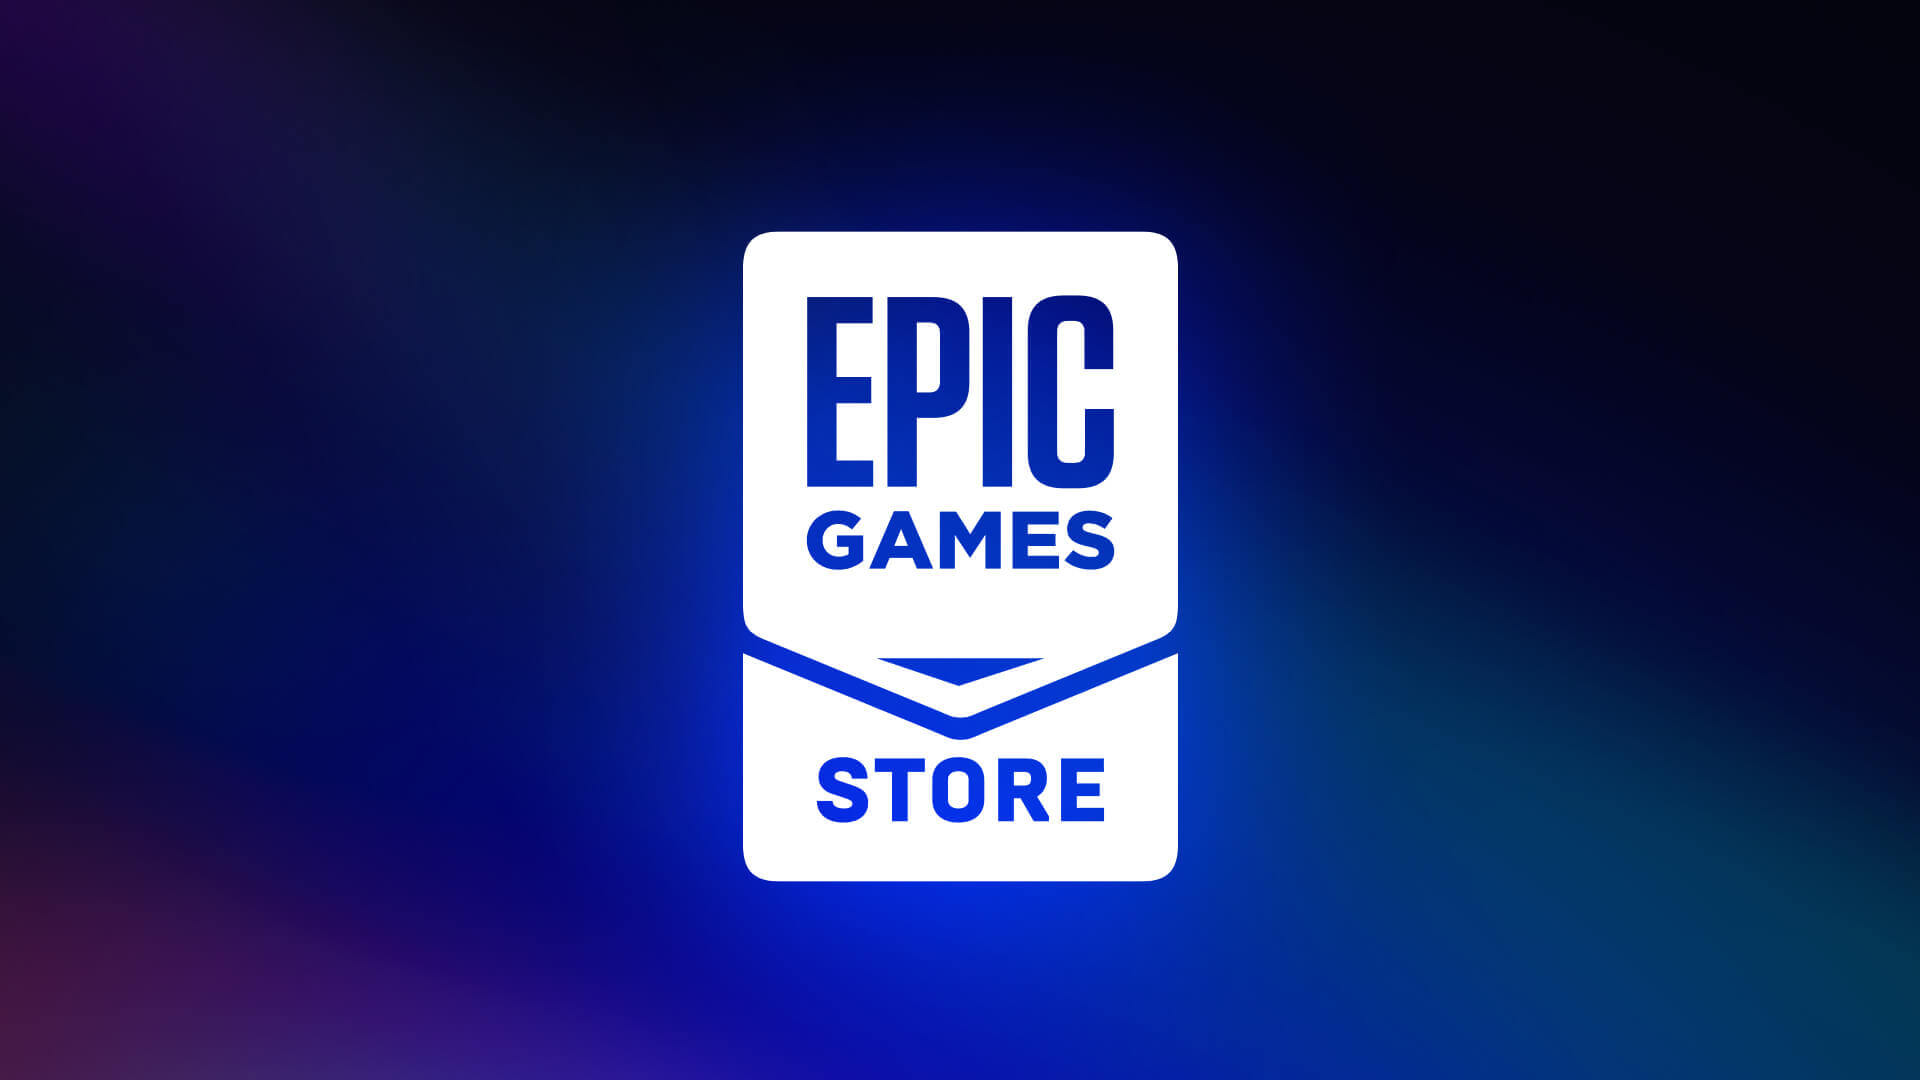 epicgames.com/activate